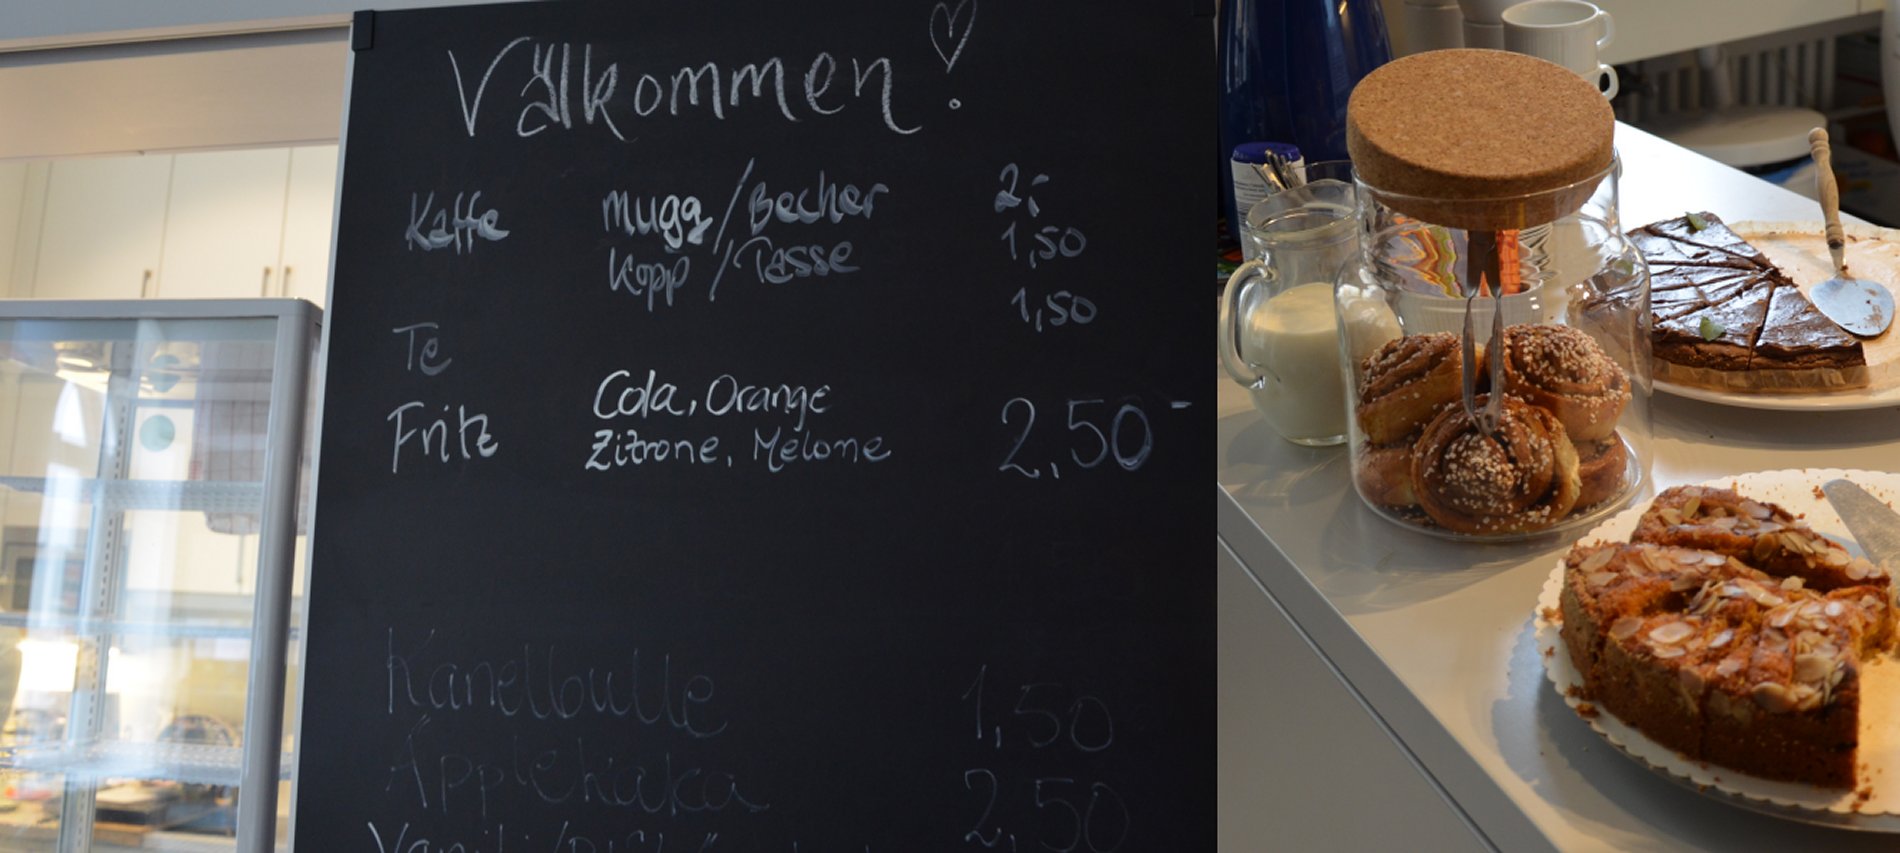 Café in der schwedischen Kirchengemeinde mit skandinavischen Spezialitäten